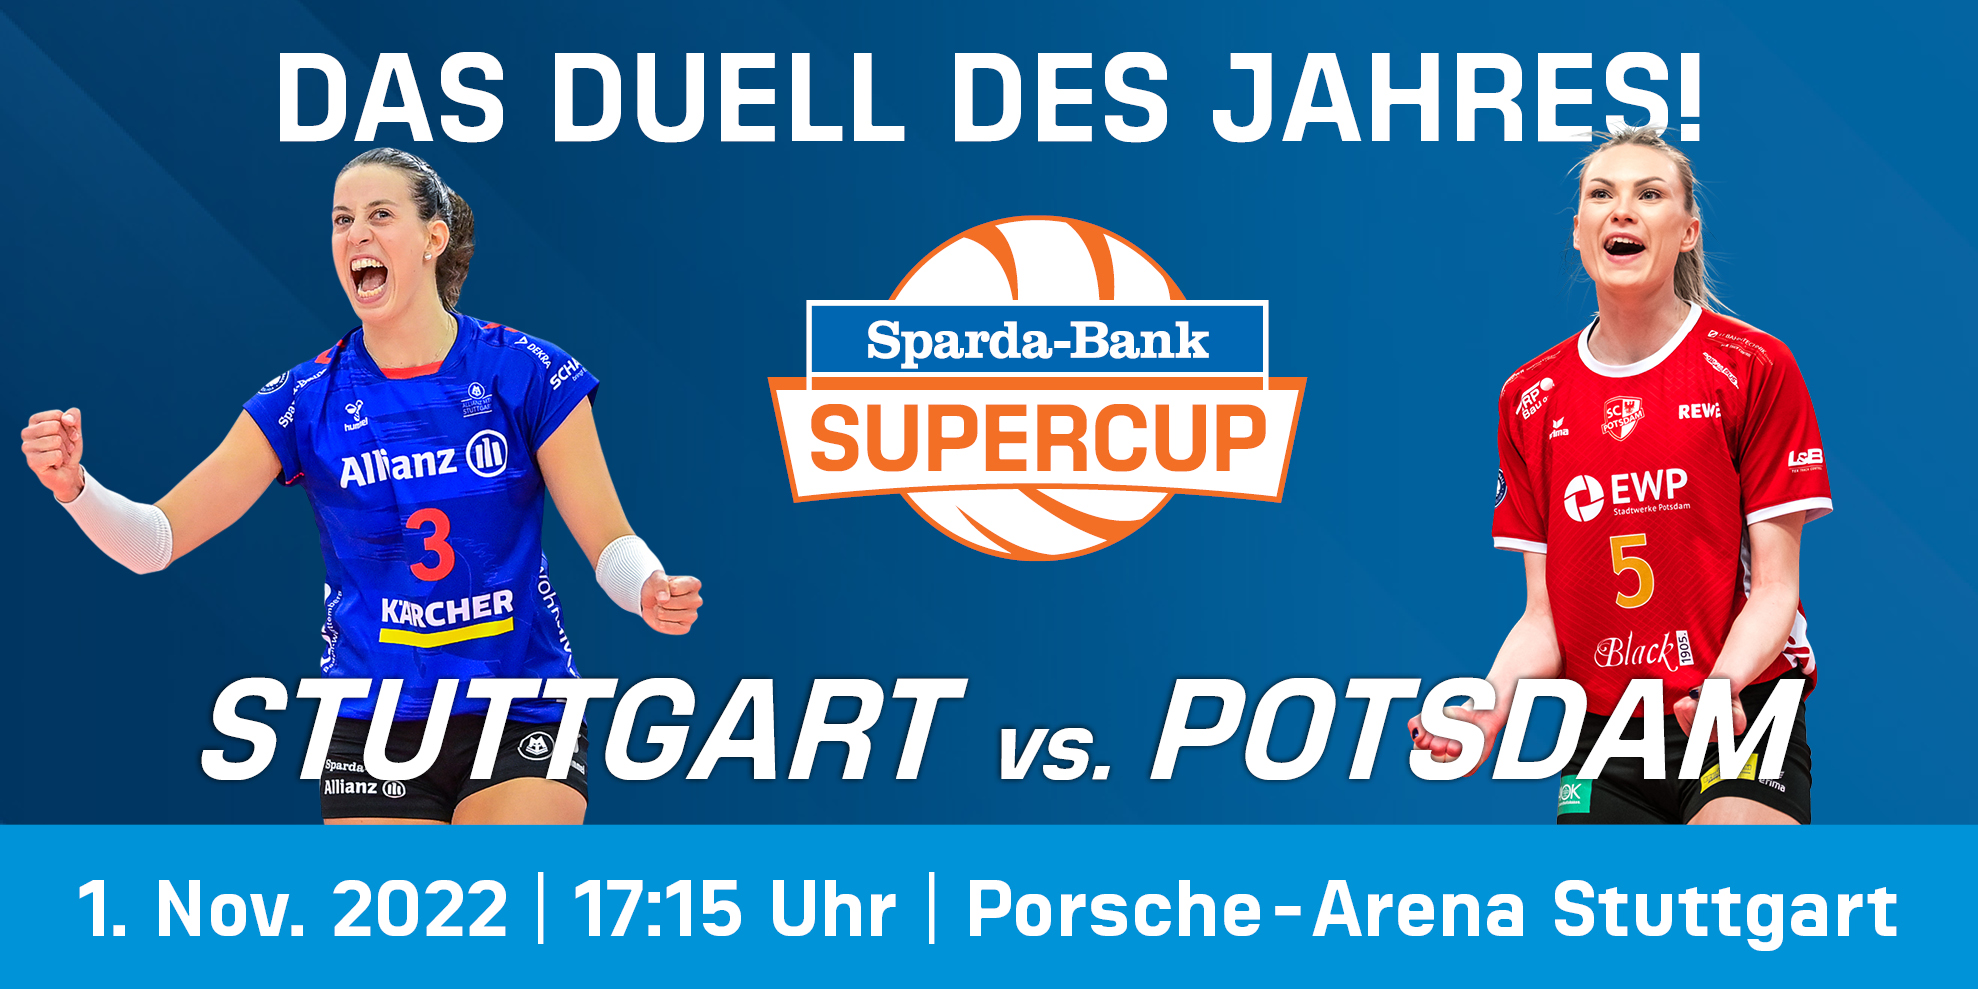 Das Duell des Jahres: der Sparda Bank-Supercup!